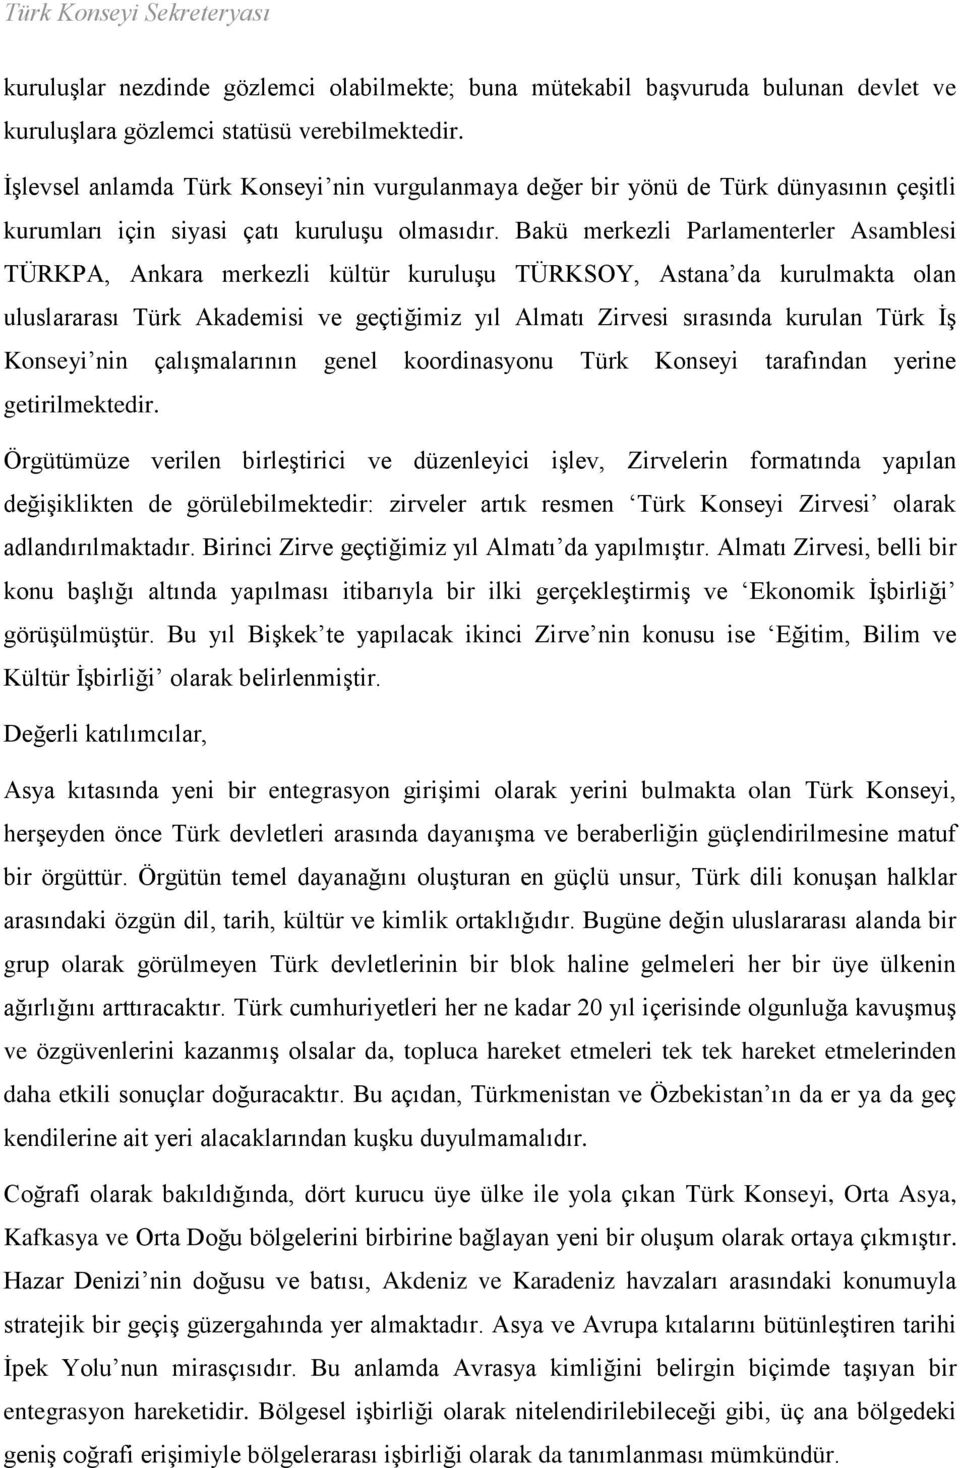 Bakü merkezli Parlamenterler Asamblesi TÜRKPA, Ankara merkezli kültür kuruluşu TÜRKSOY, Astana da kurulmakta olan uluslararası Türk Akademisi ve geçtiğimiz yıl Almatı Zirvesi sırasında kurulan Türk